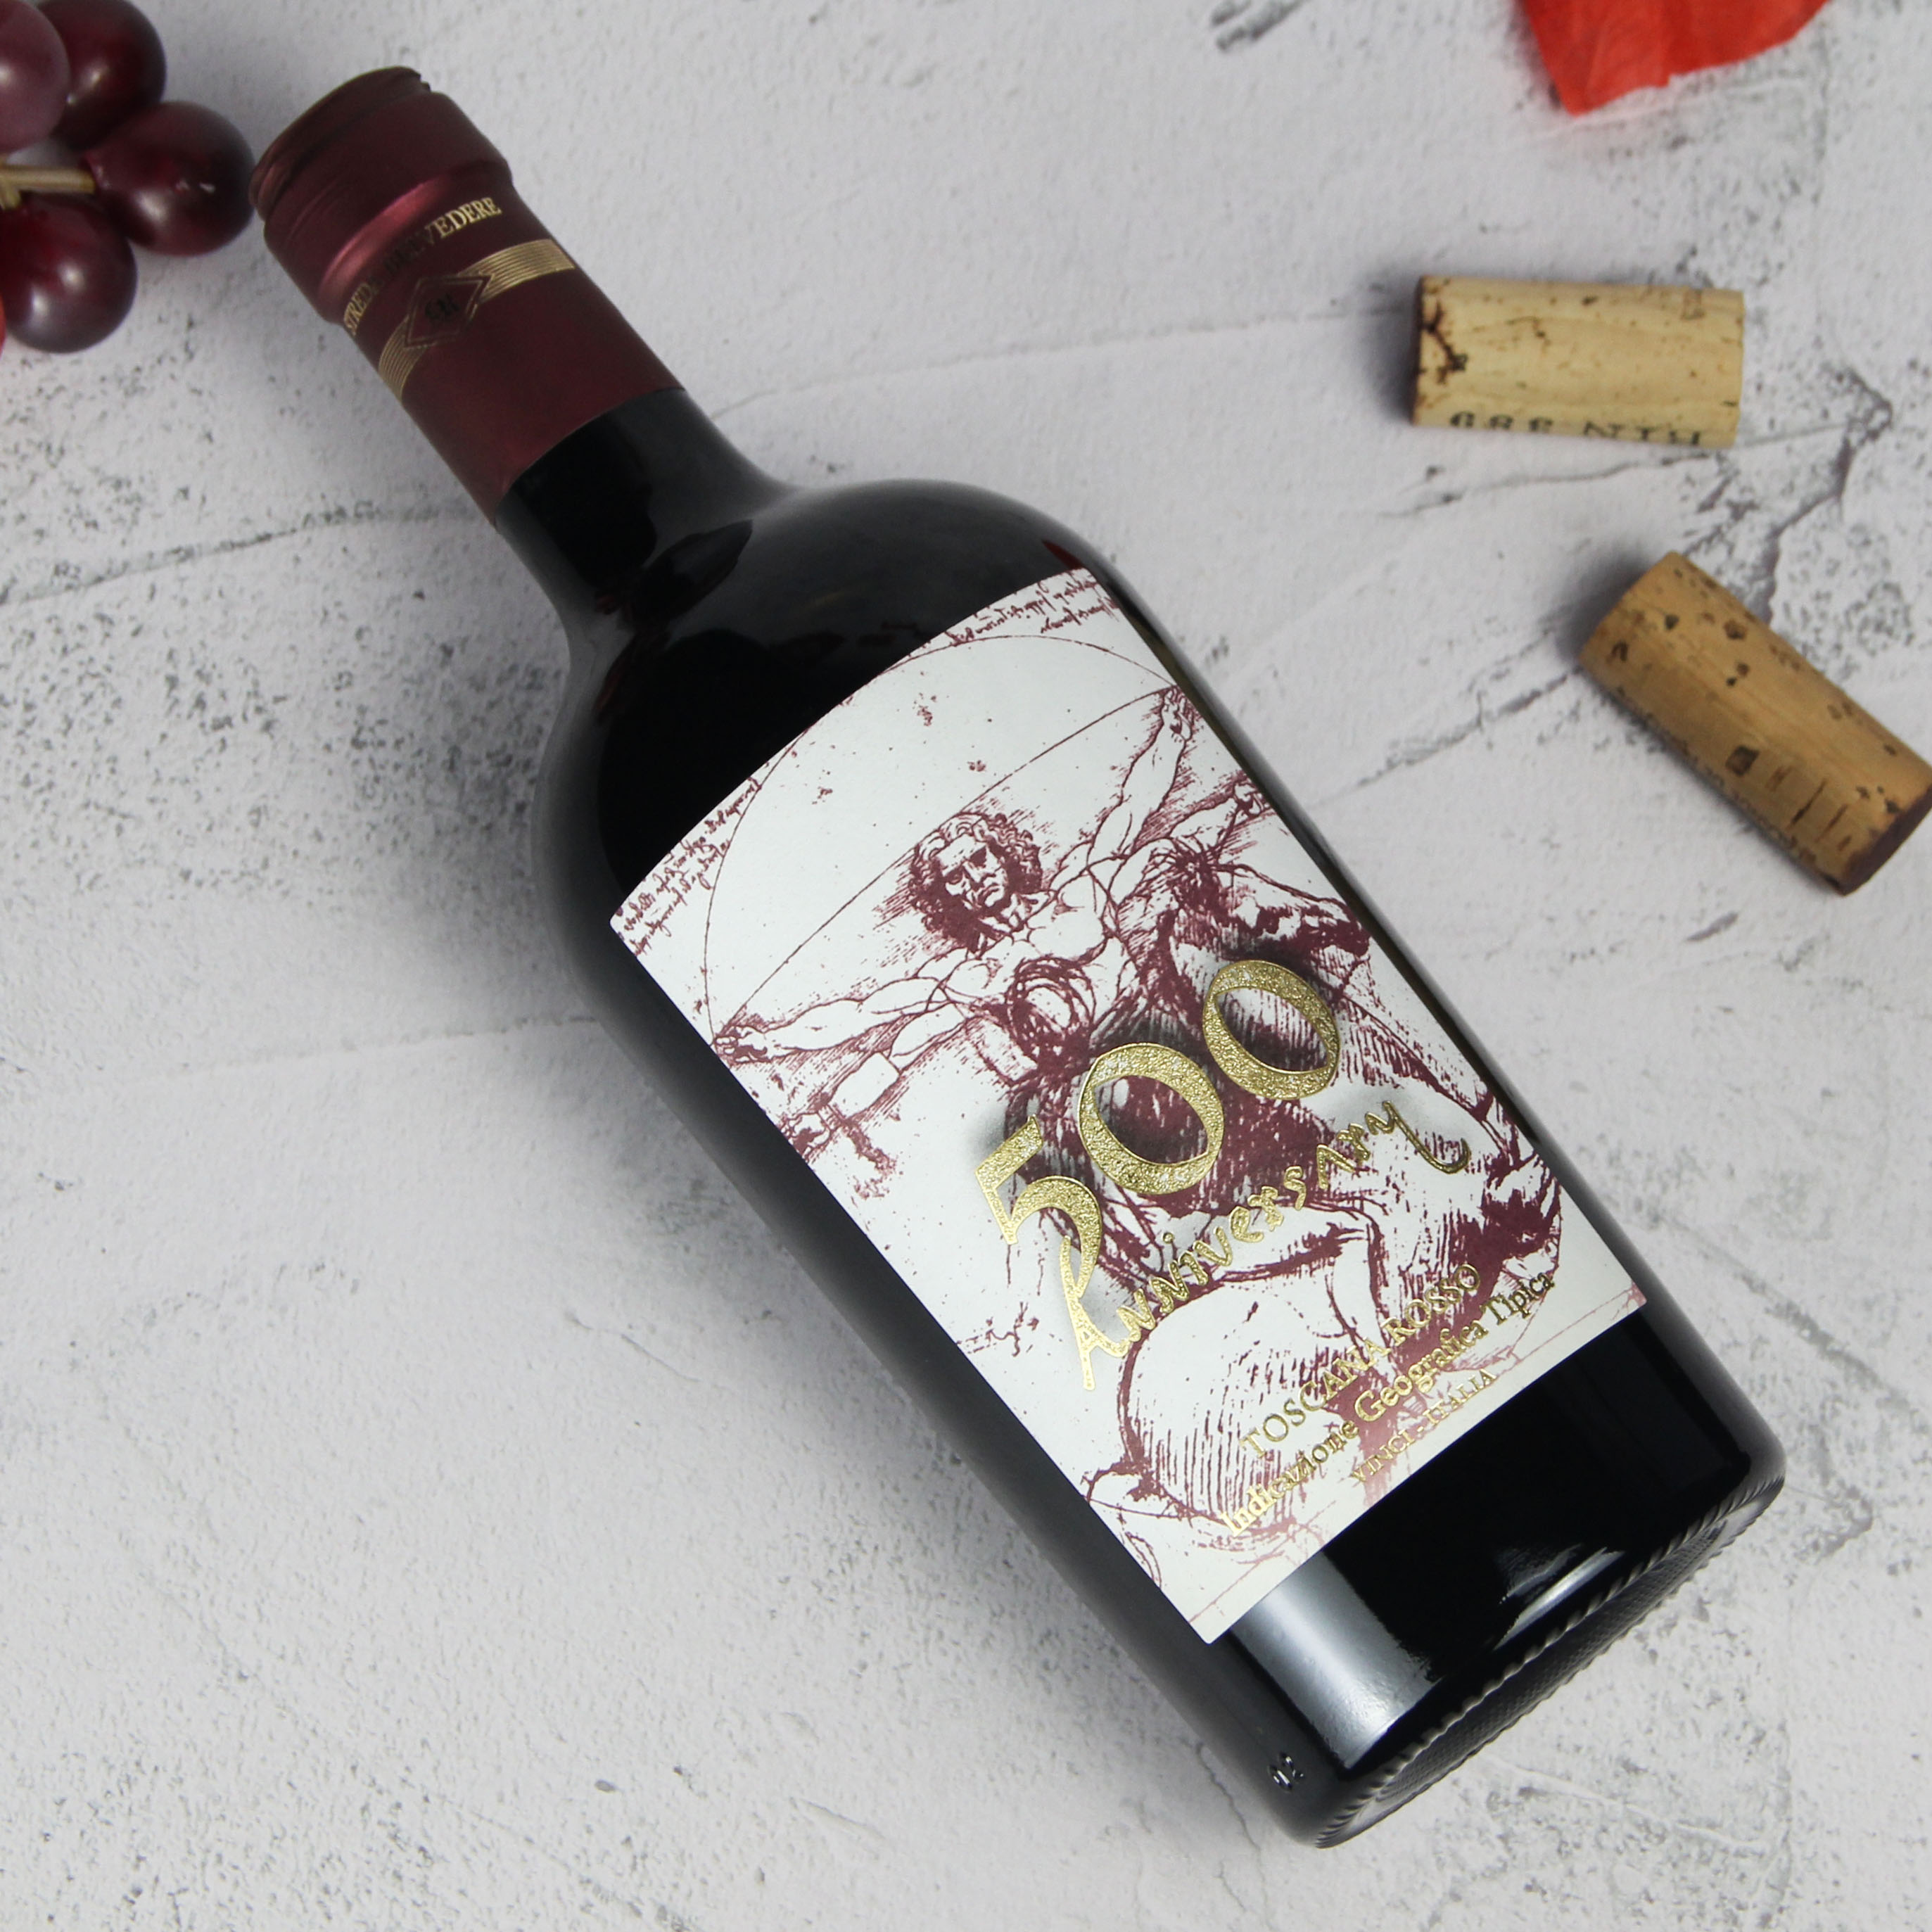 意大利托斯卡纳斯特里达丽酒庄500周年干红葡萄酒红酒